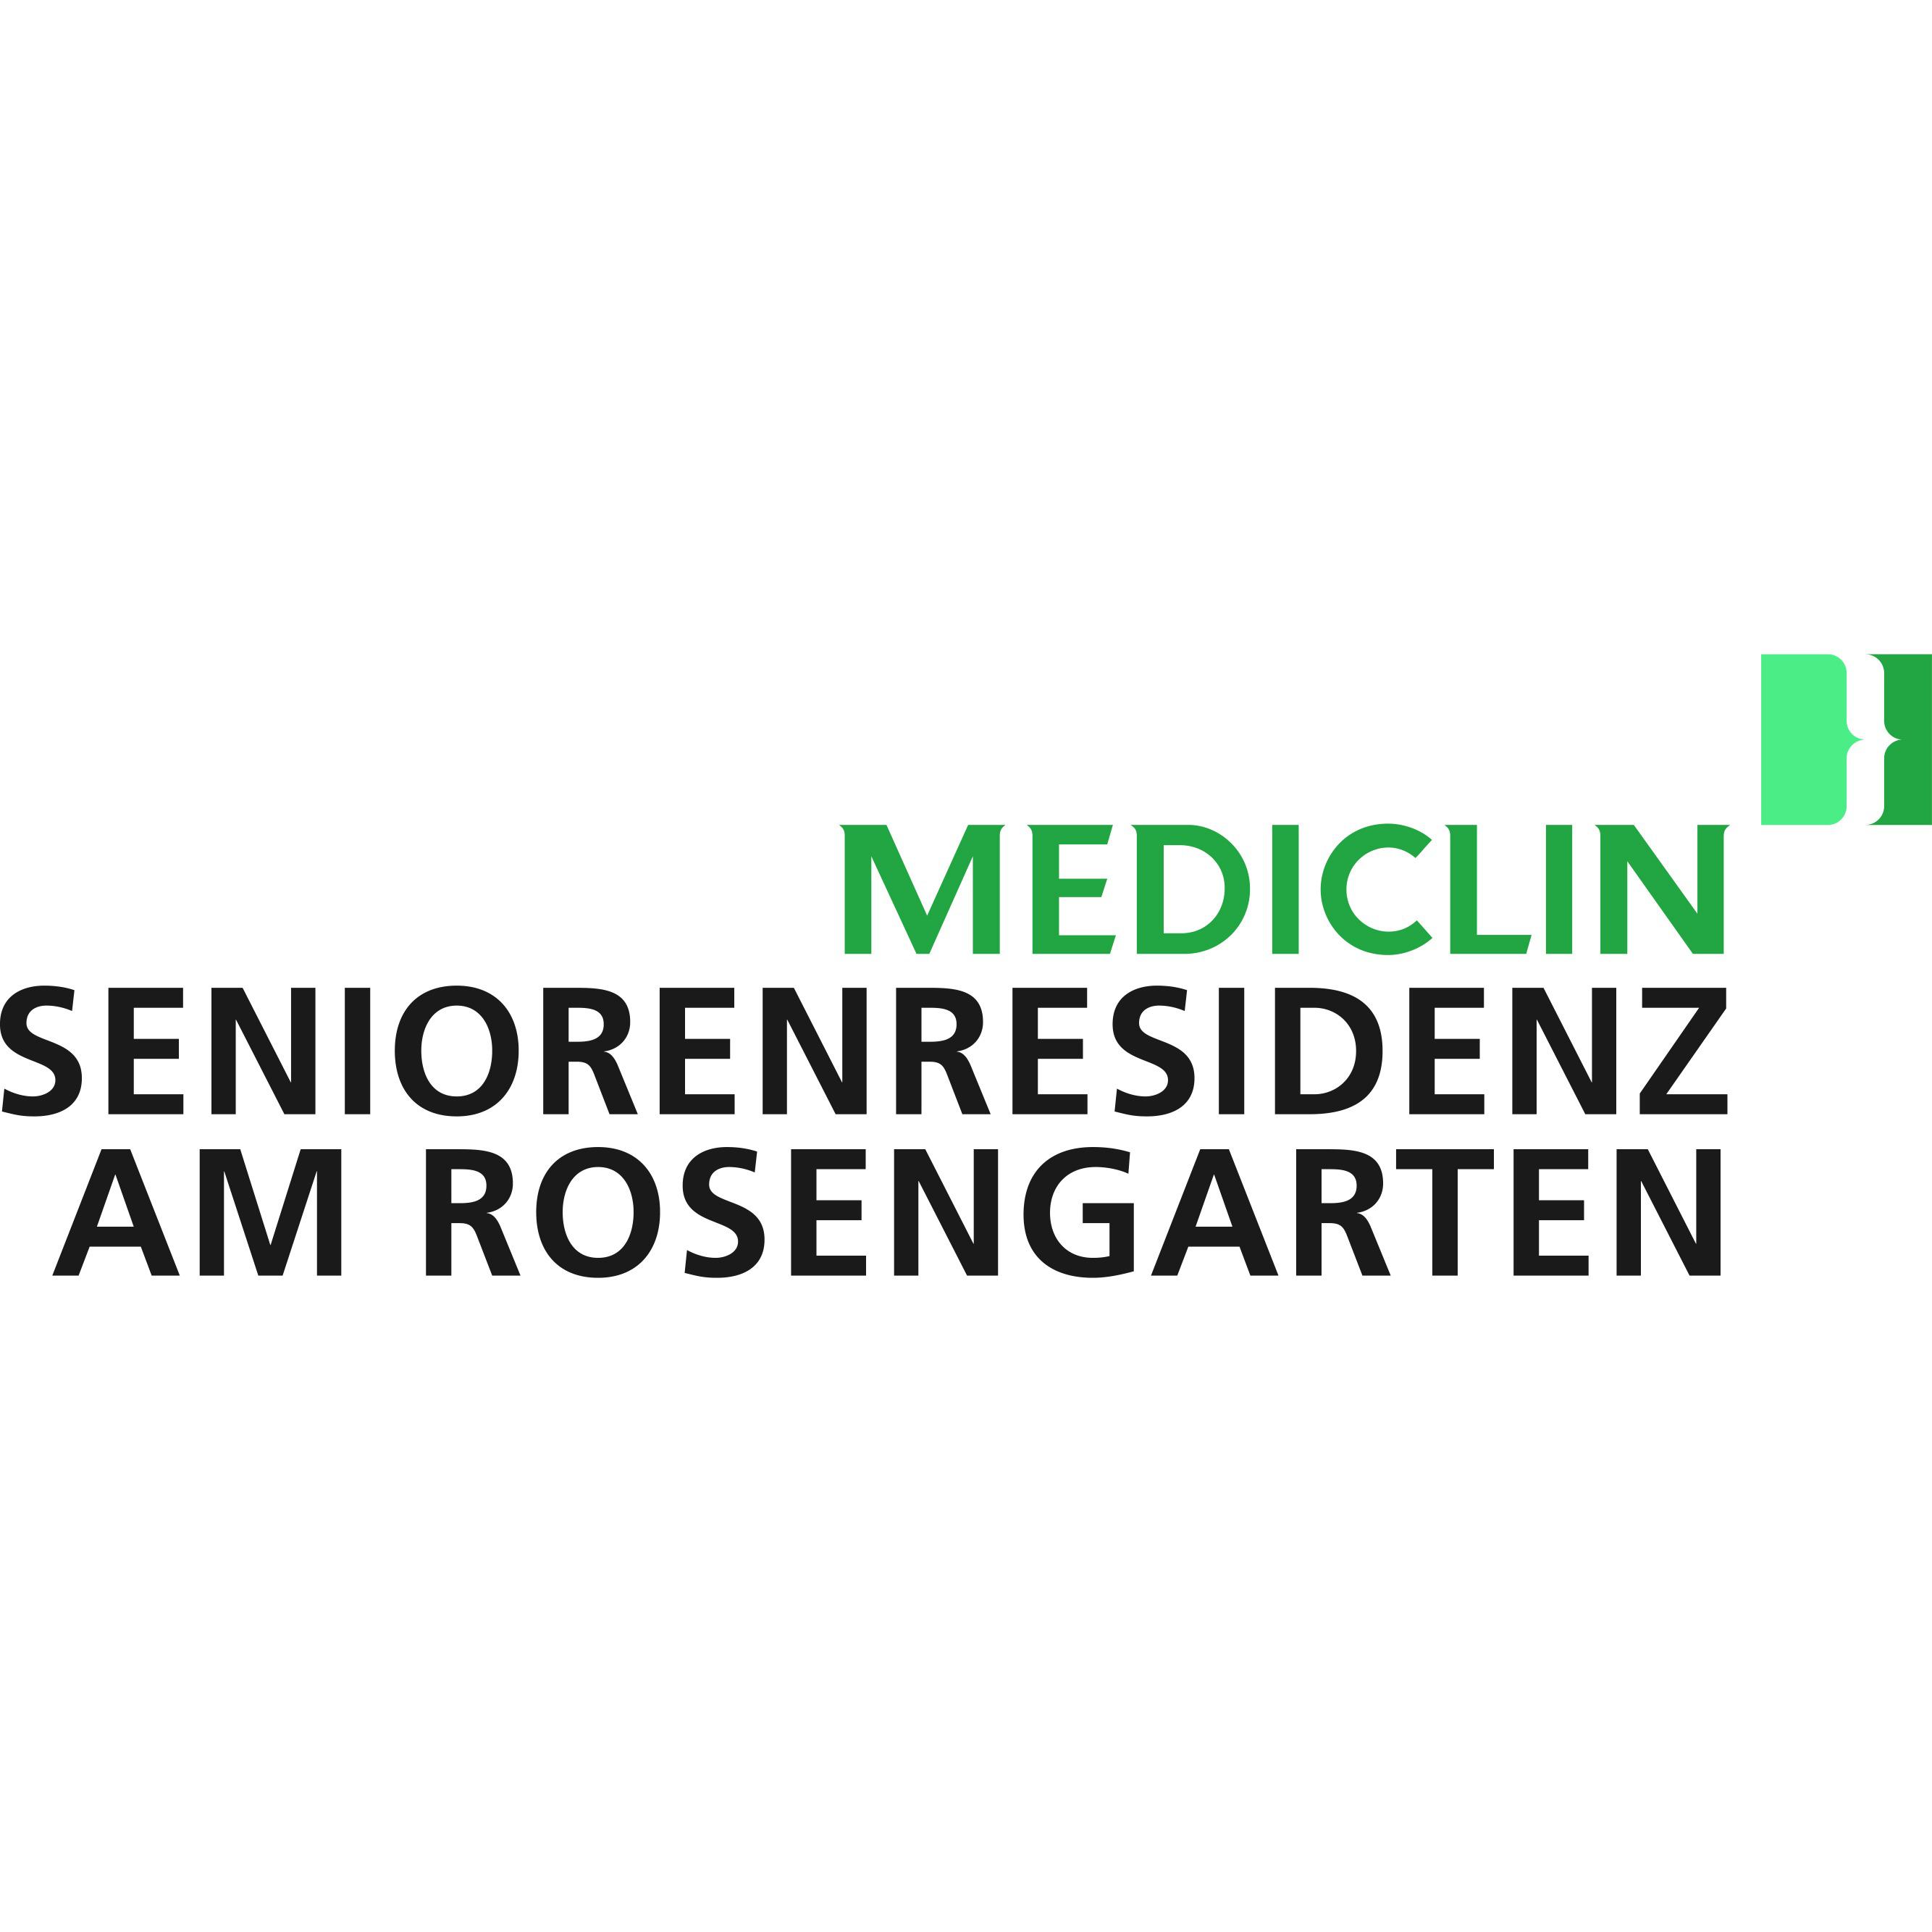 MEDICLIN Seniorenresidenz Am Rosengarten Logo